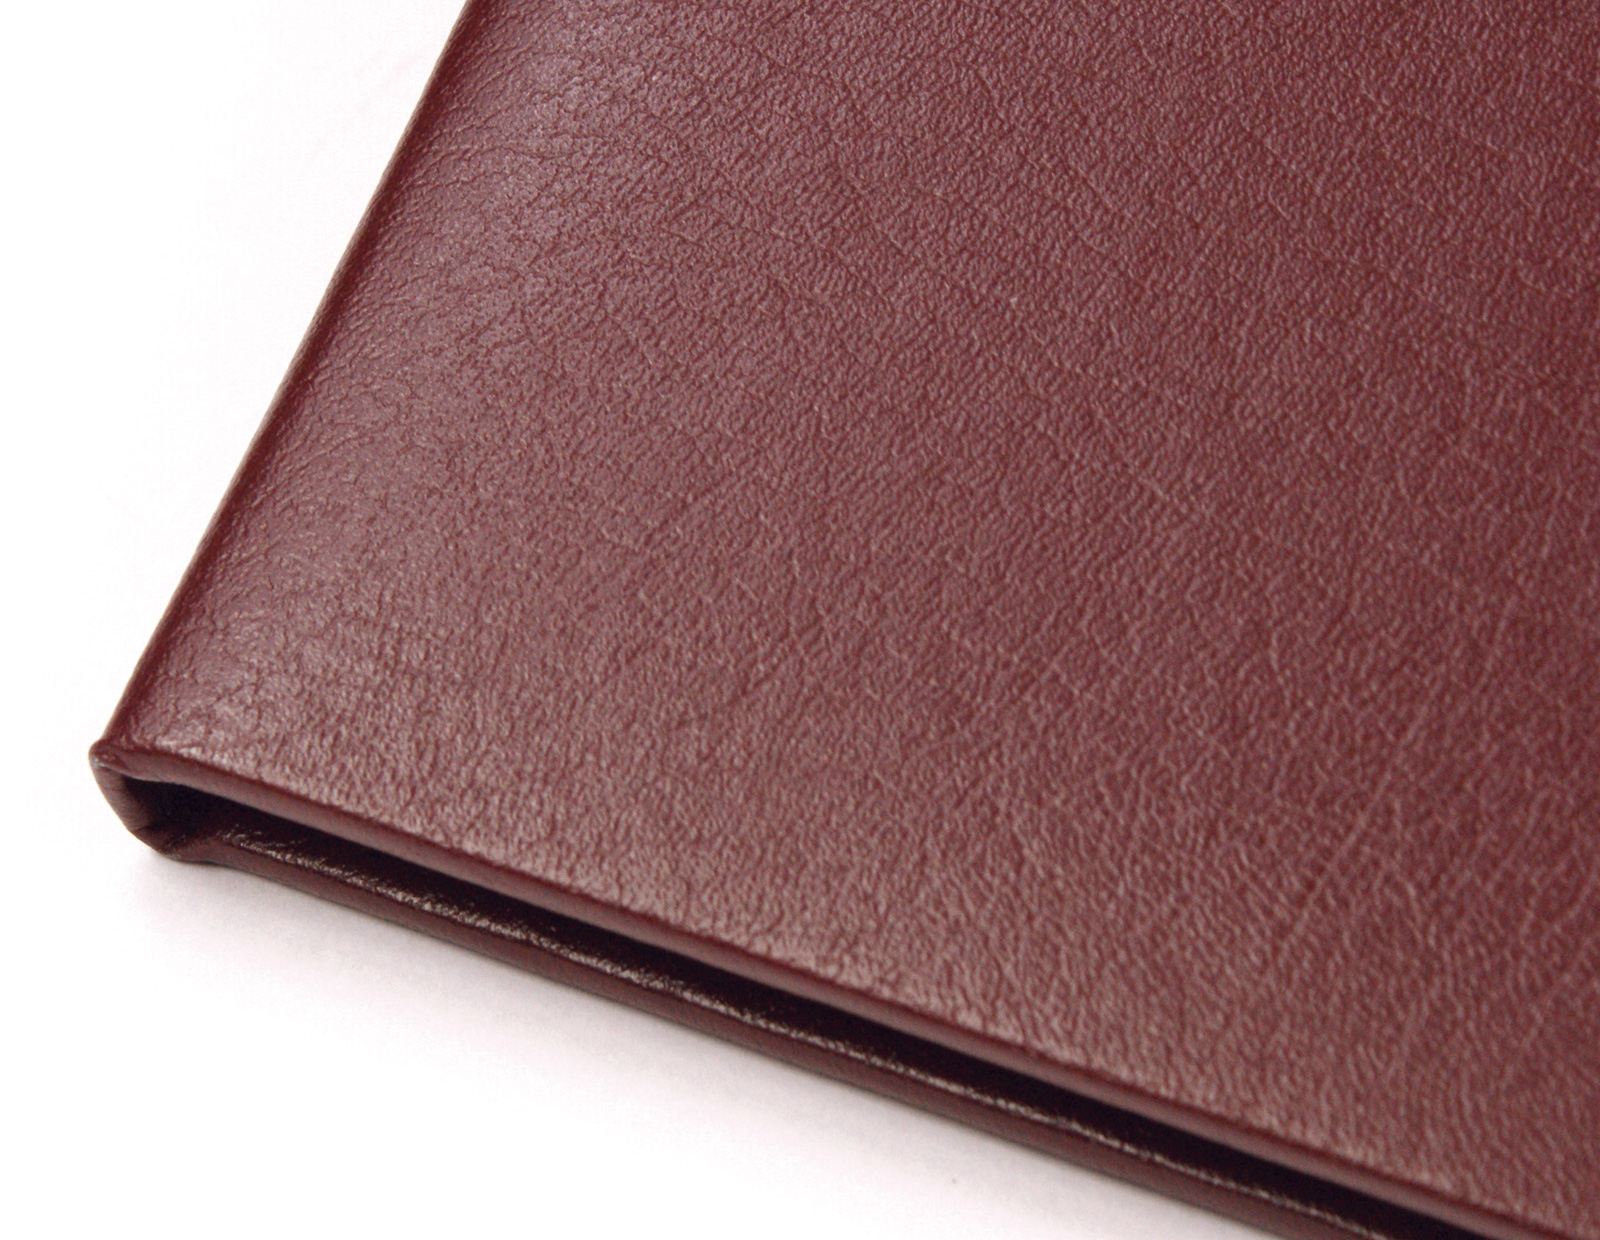 menu cover bonded leather material closeup